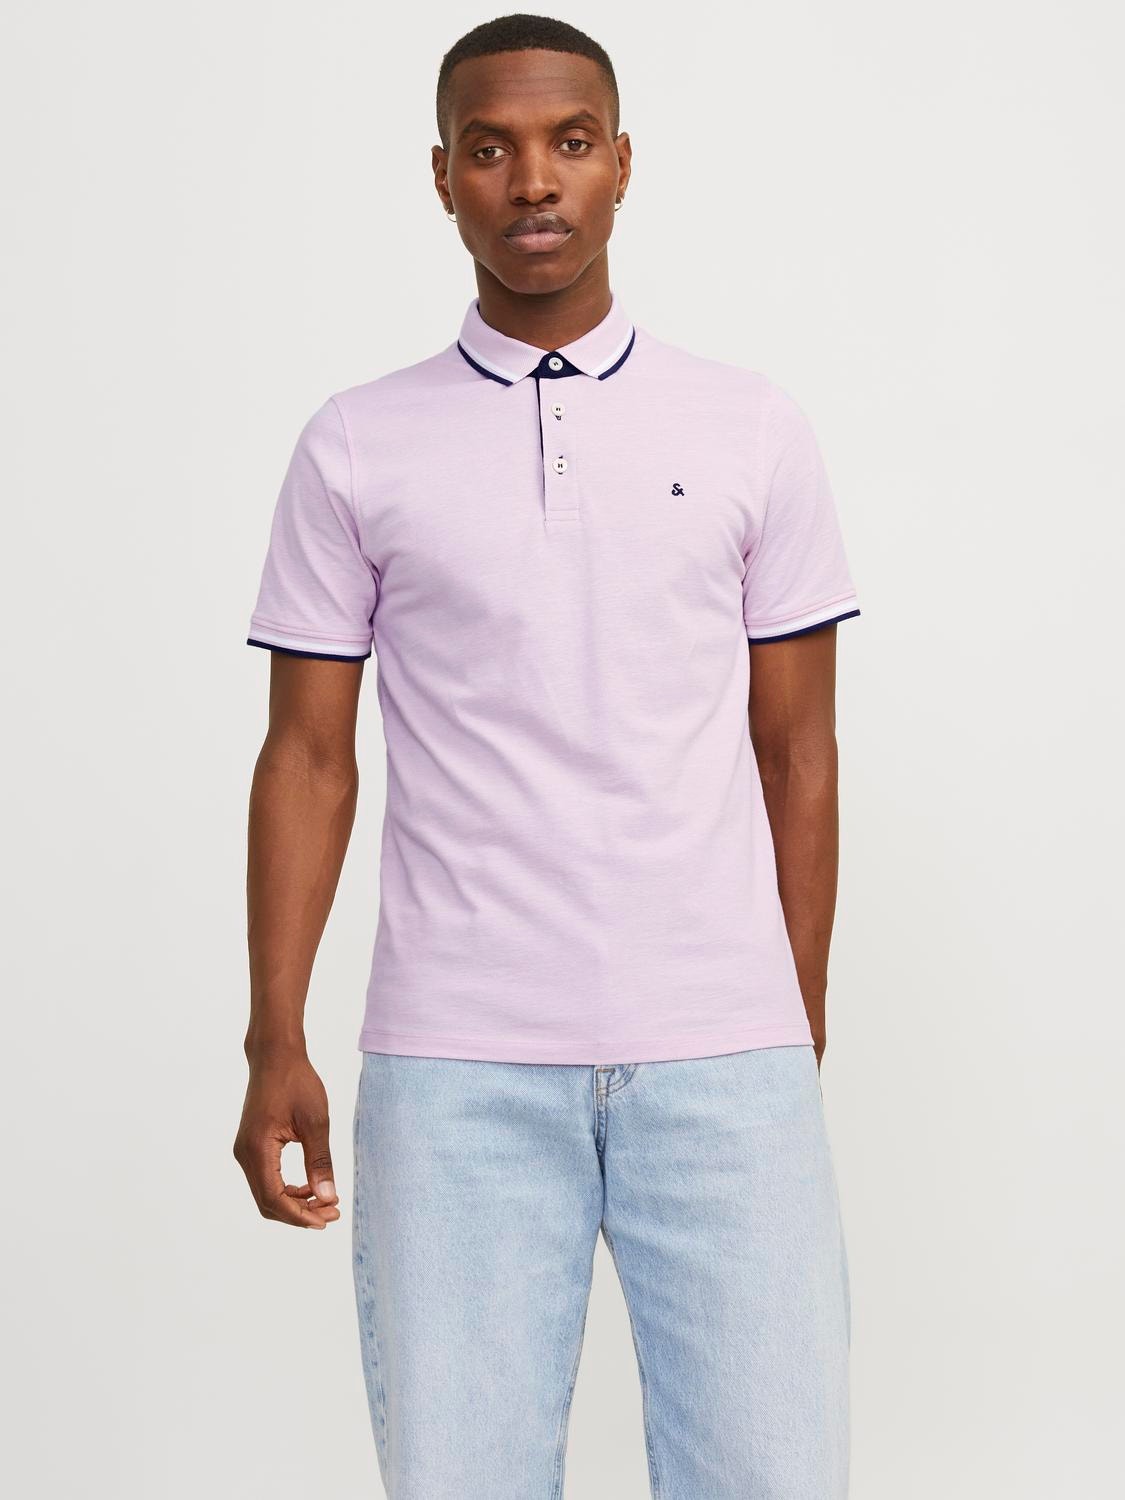 Jack & Jones Enfärgat Polo T-shirt -Pink Nectar - 12136668